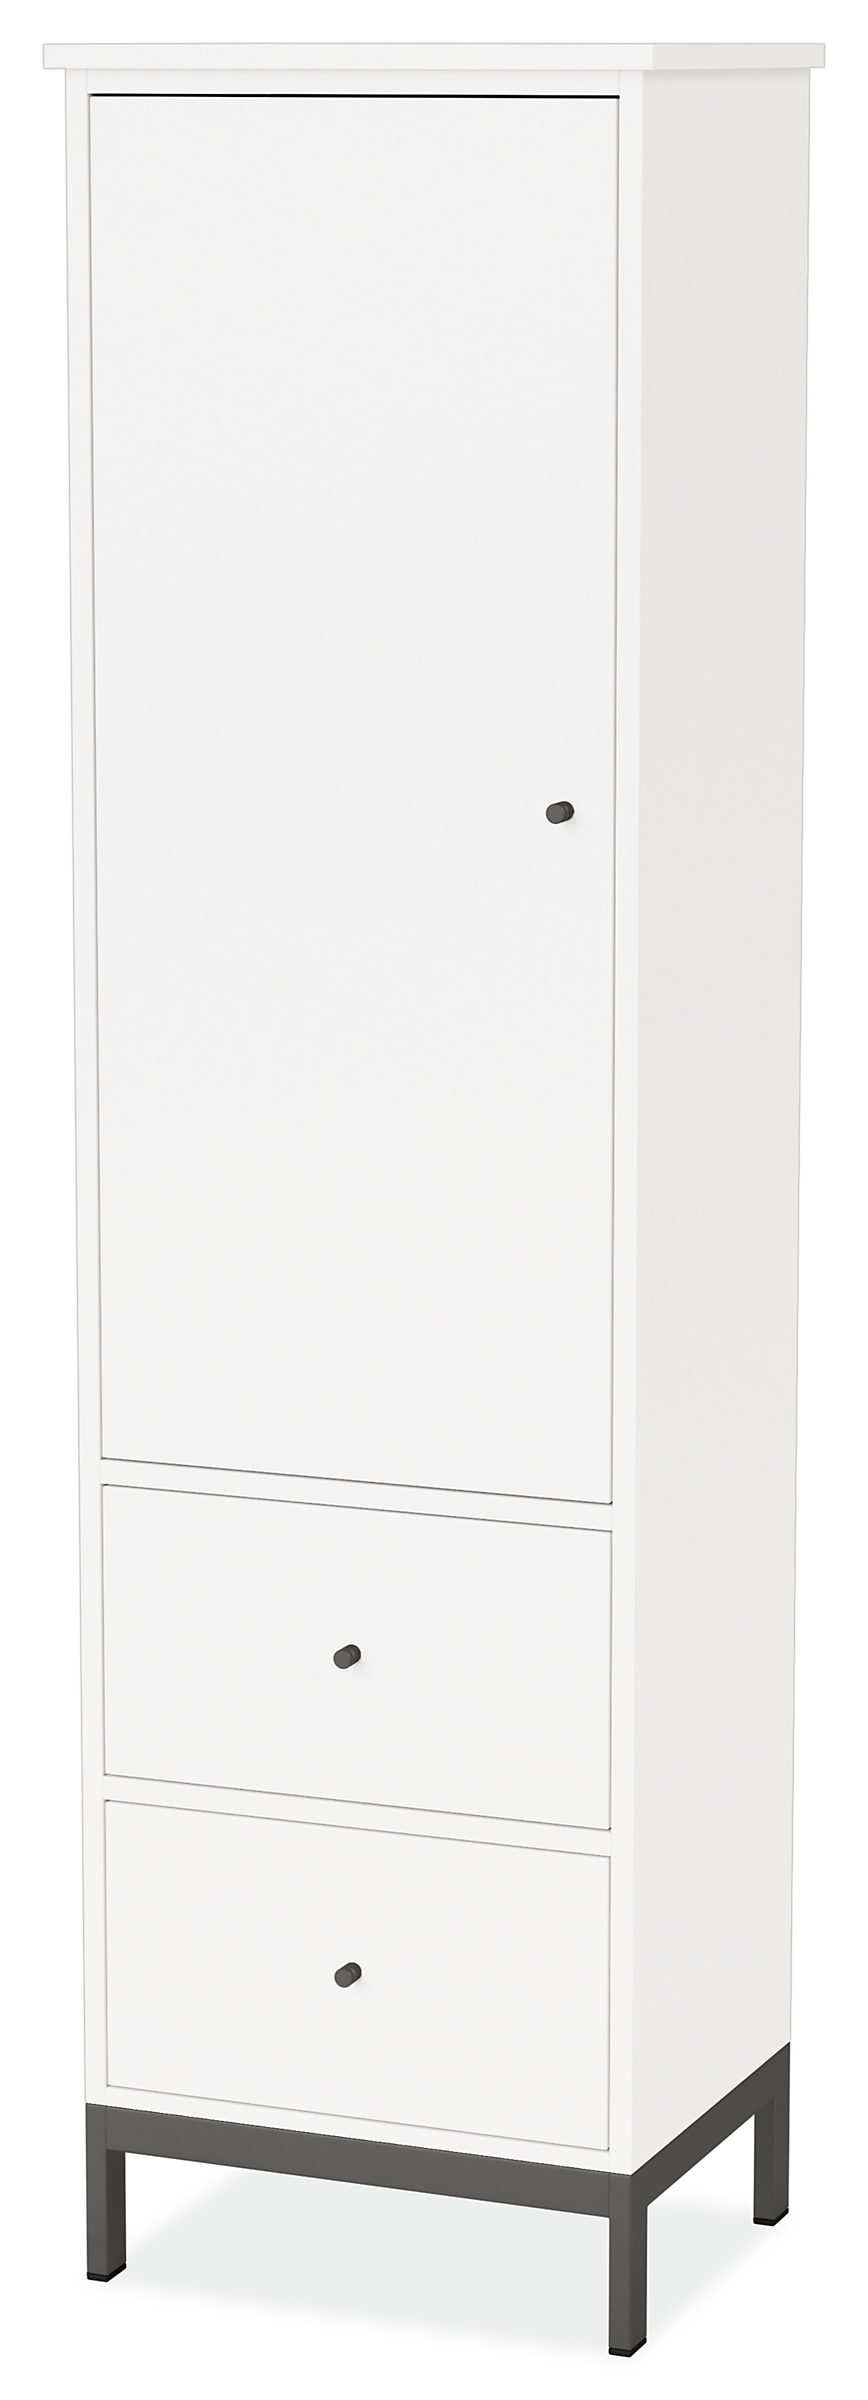 Linear 20w 16d 72h Freestanding Bathroom Linen Cabinet with Door